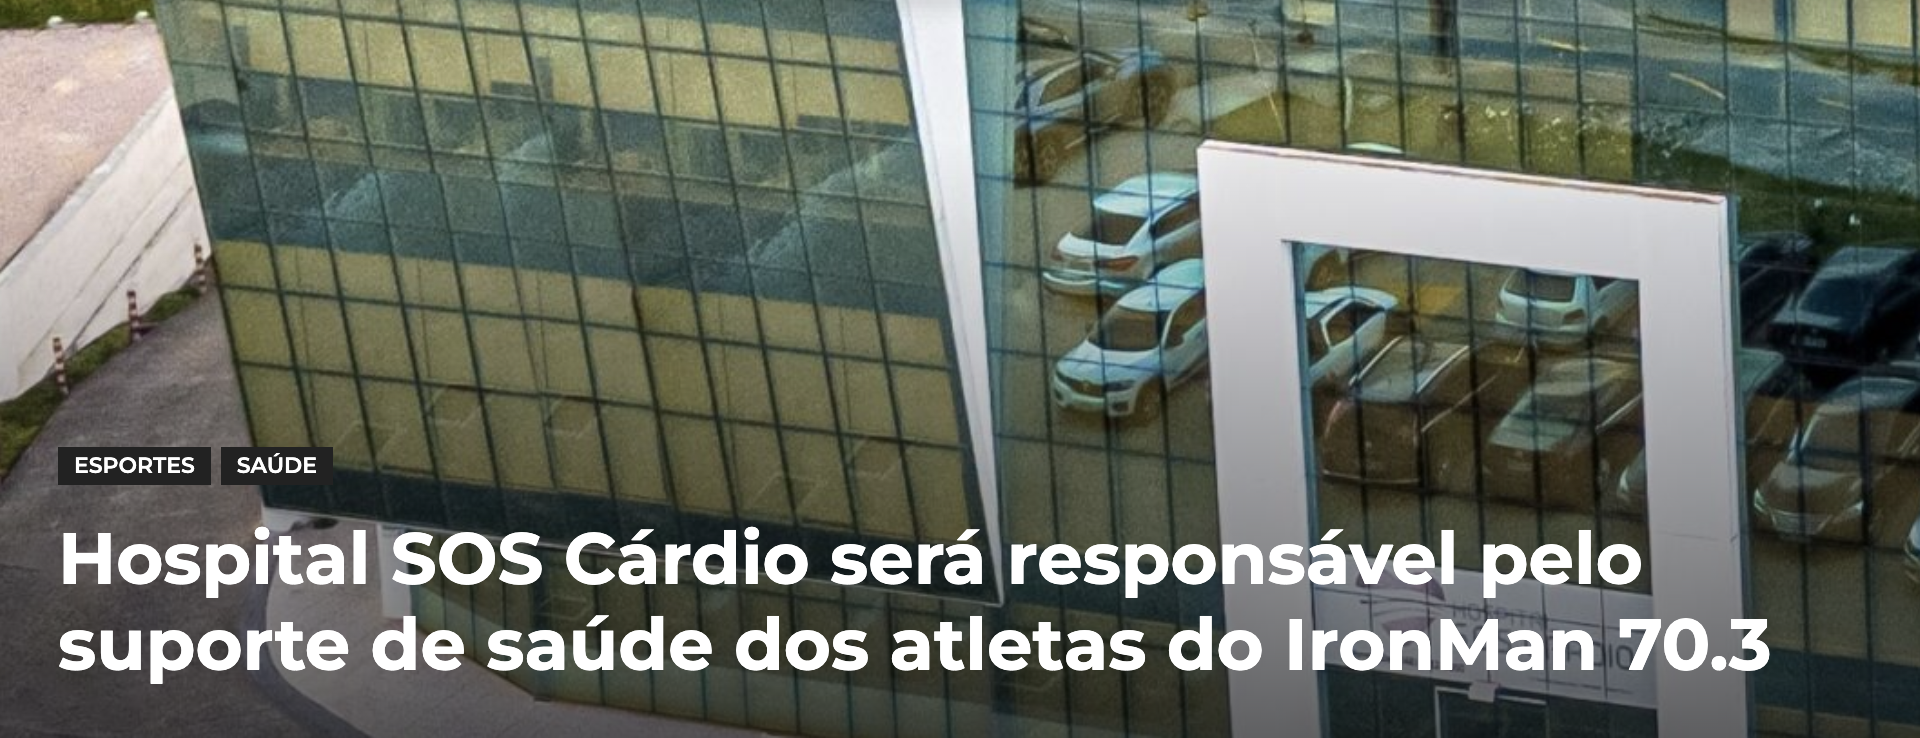 Hospital SOS Cárdio será responsável pelo suporte de saúde dos atletas do IronMan 70.3